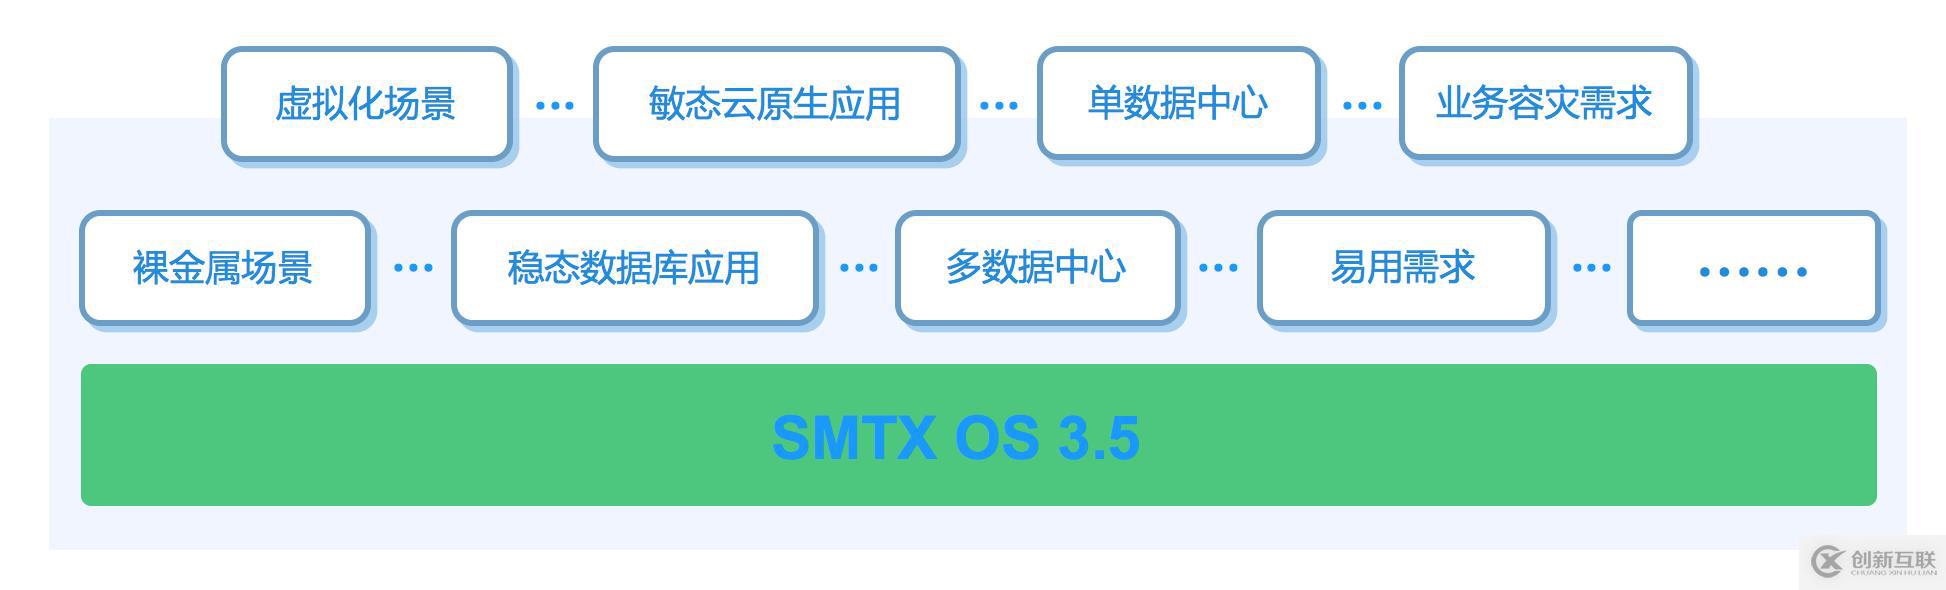 SmartX CTO 深度解读 SMTX OS 3.5 产品特性